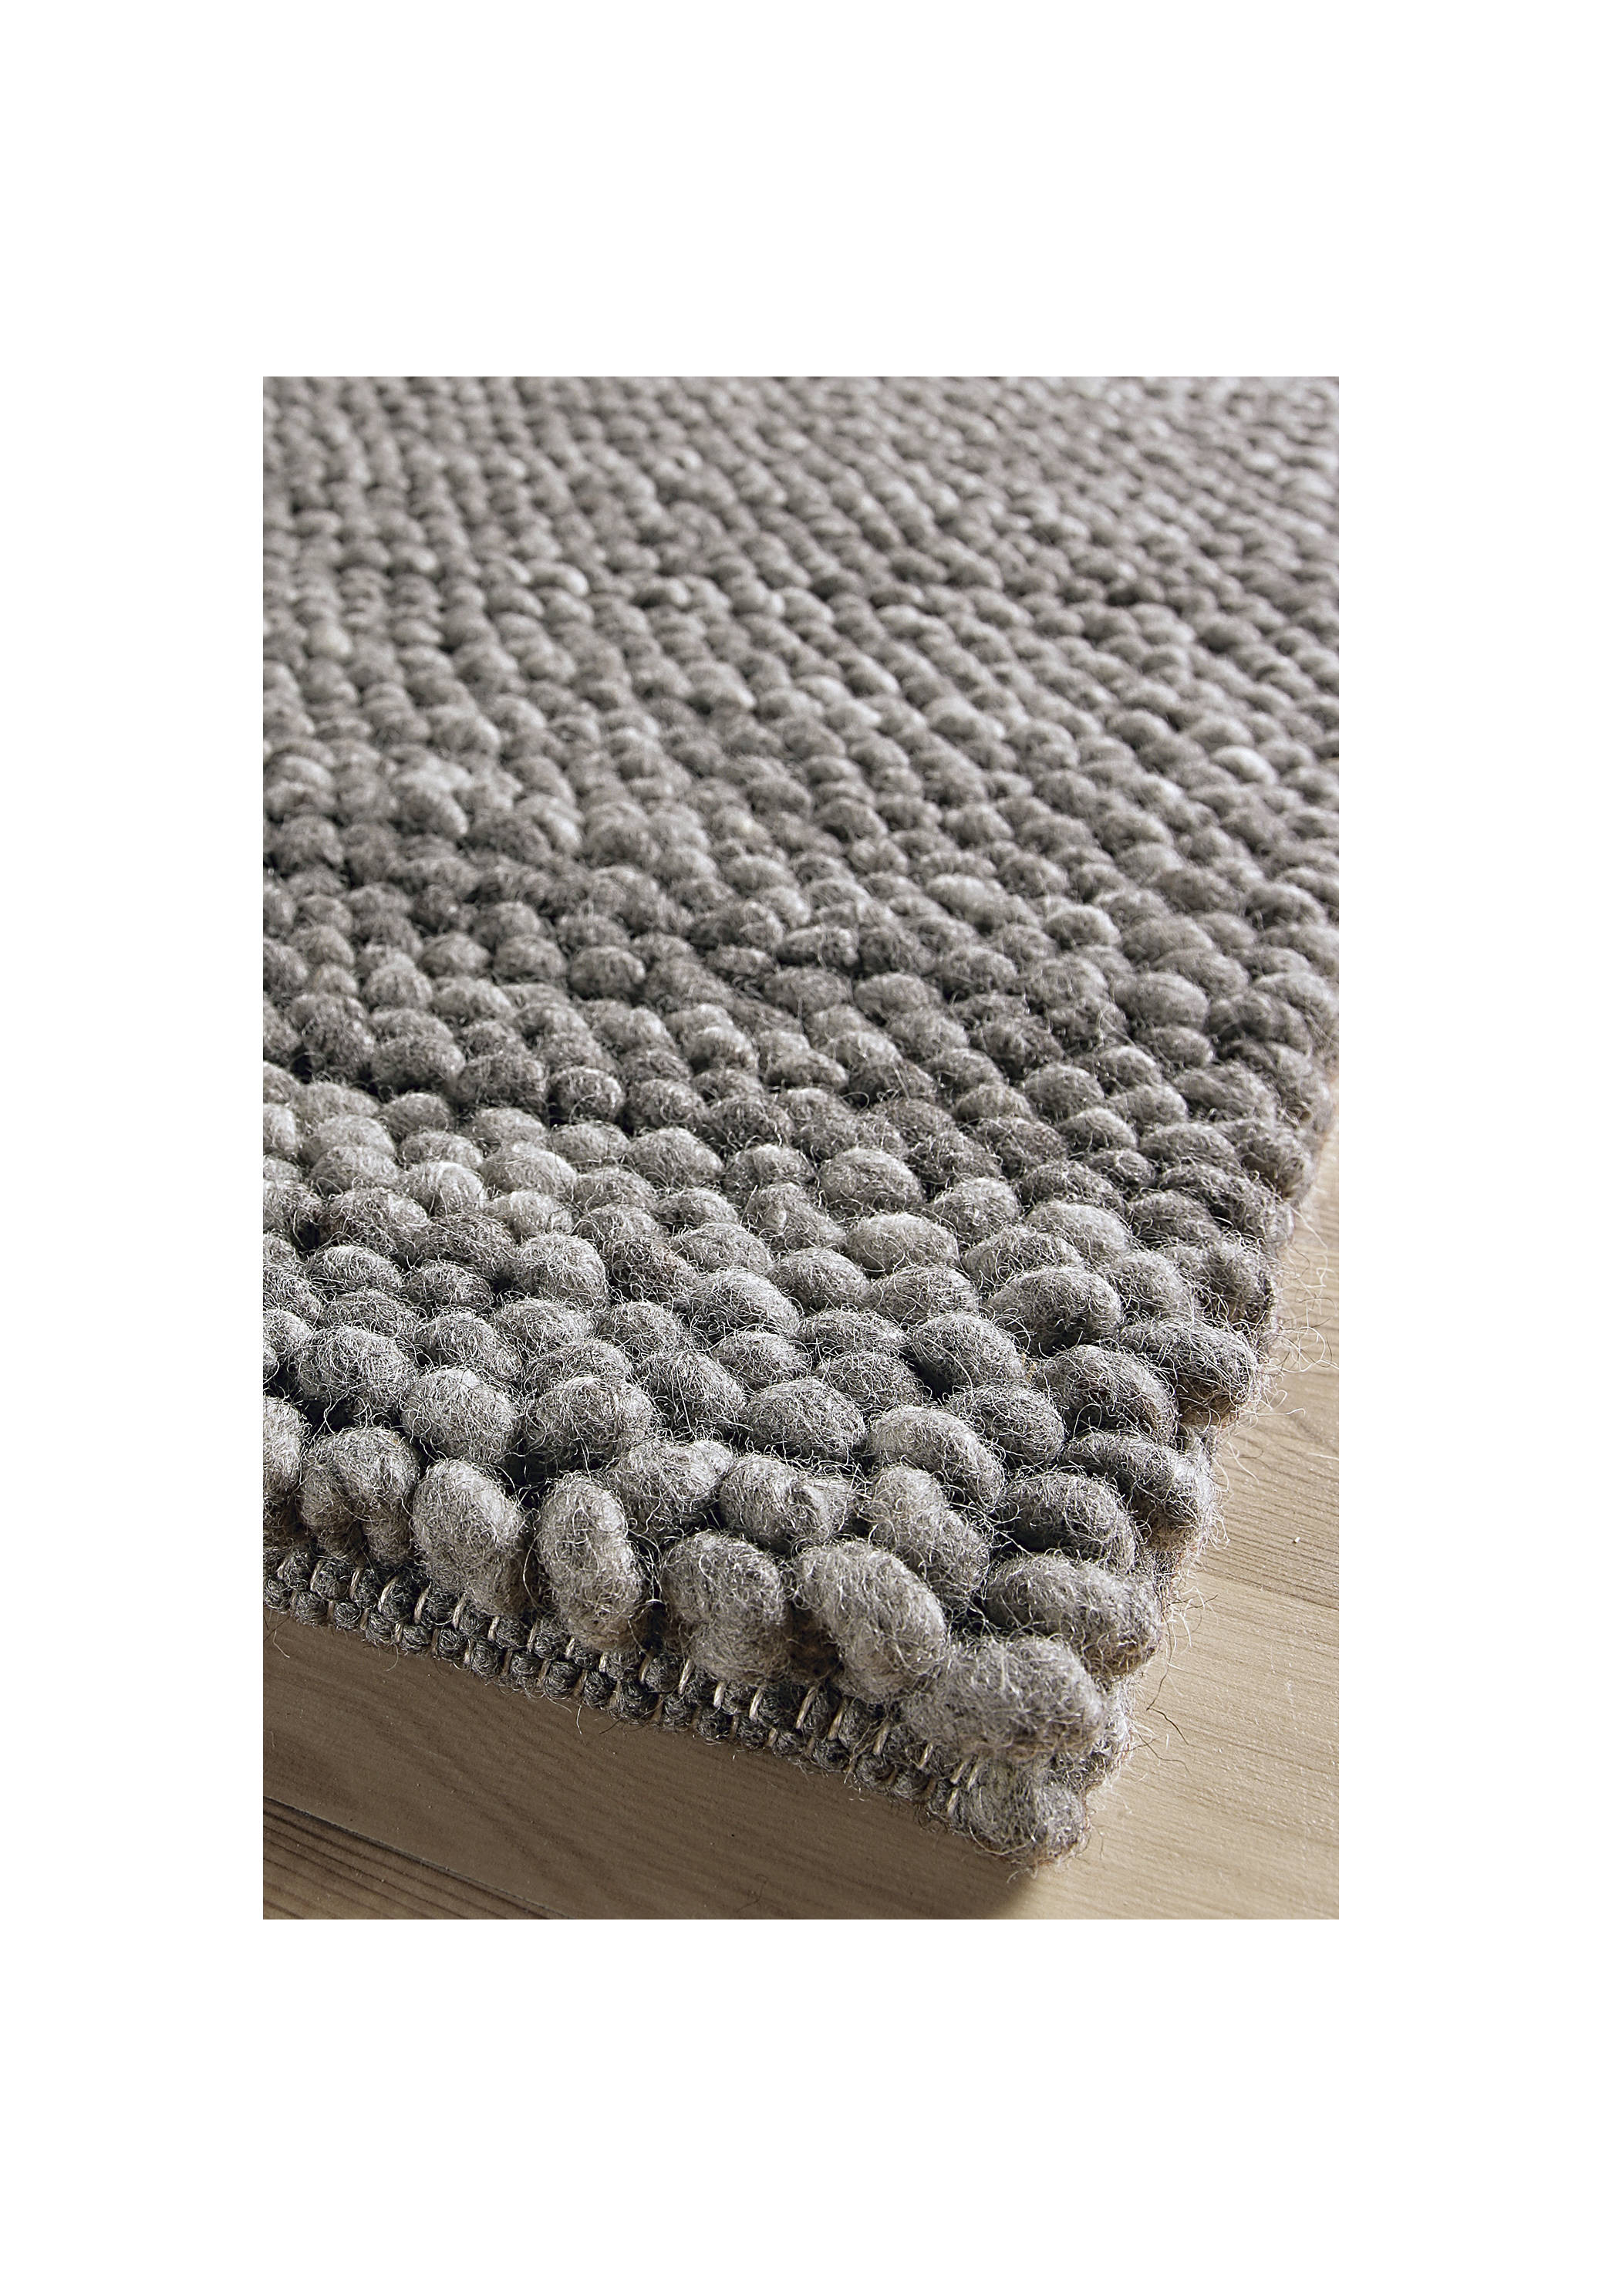 Teppich Wolle
 Teppich Grau Wolle teppich rund grau wolle teppiche hause